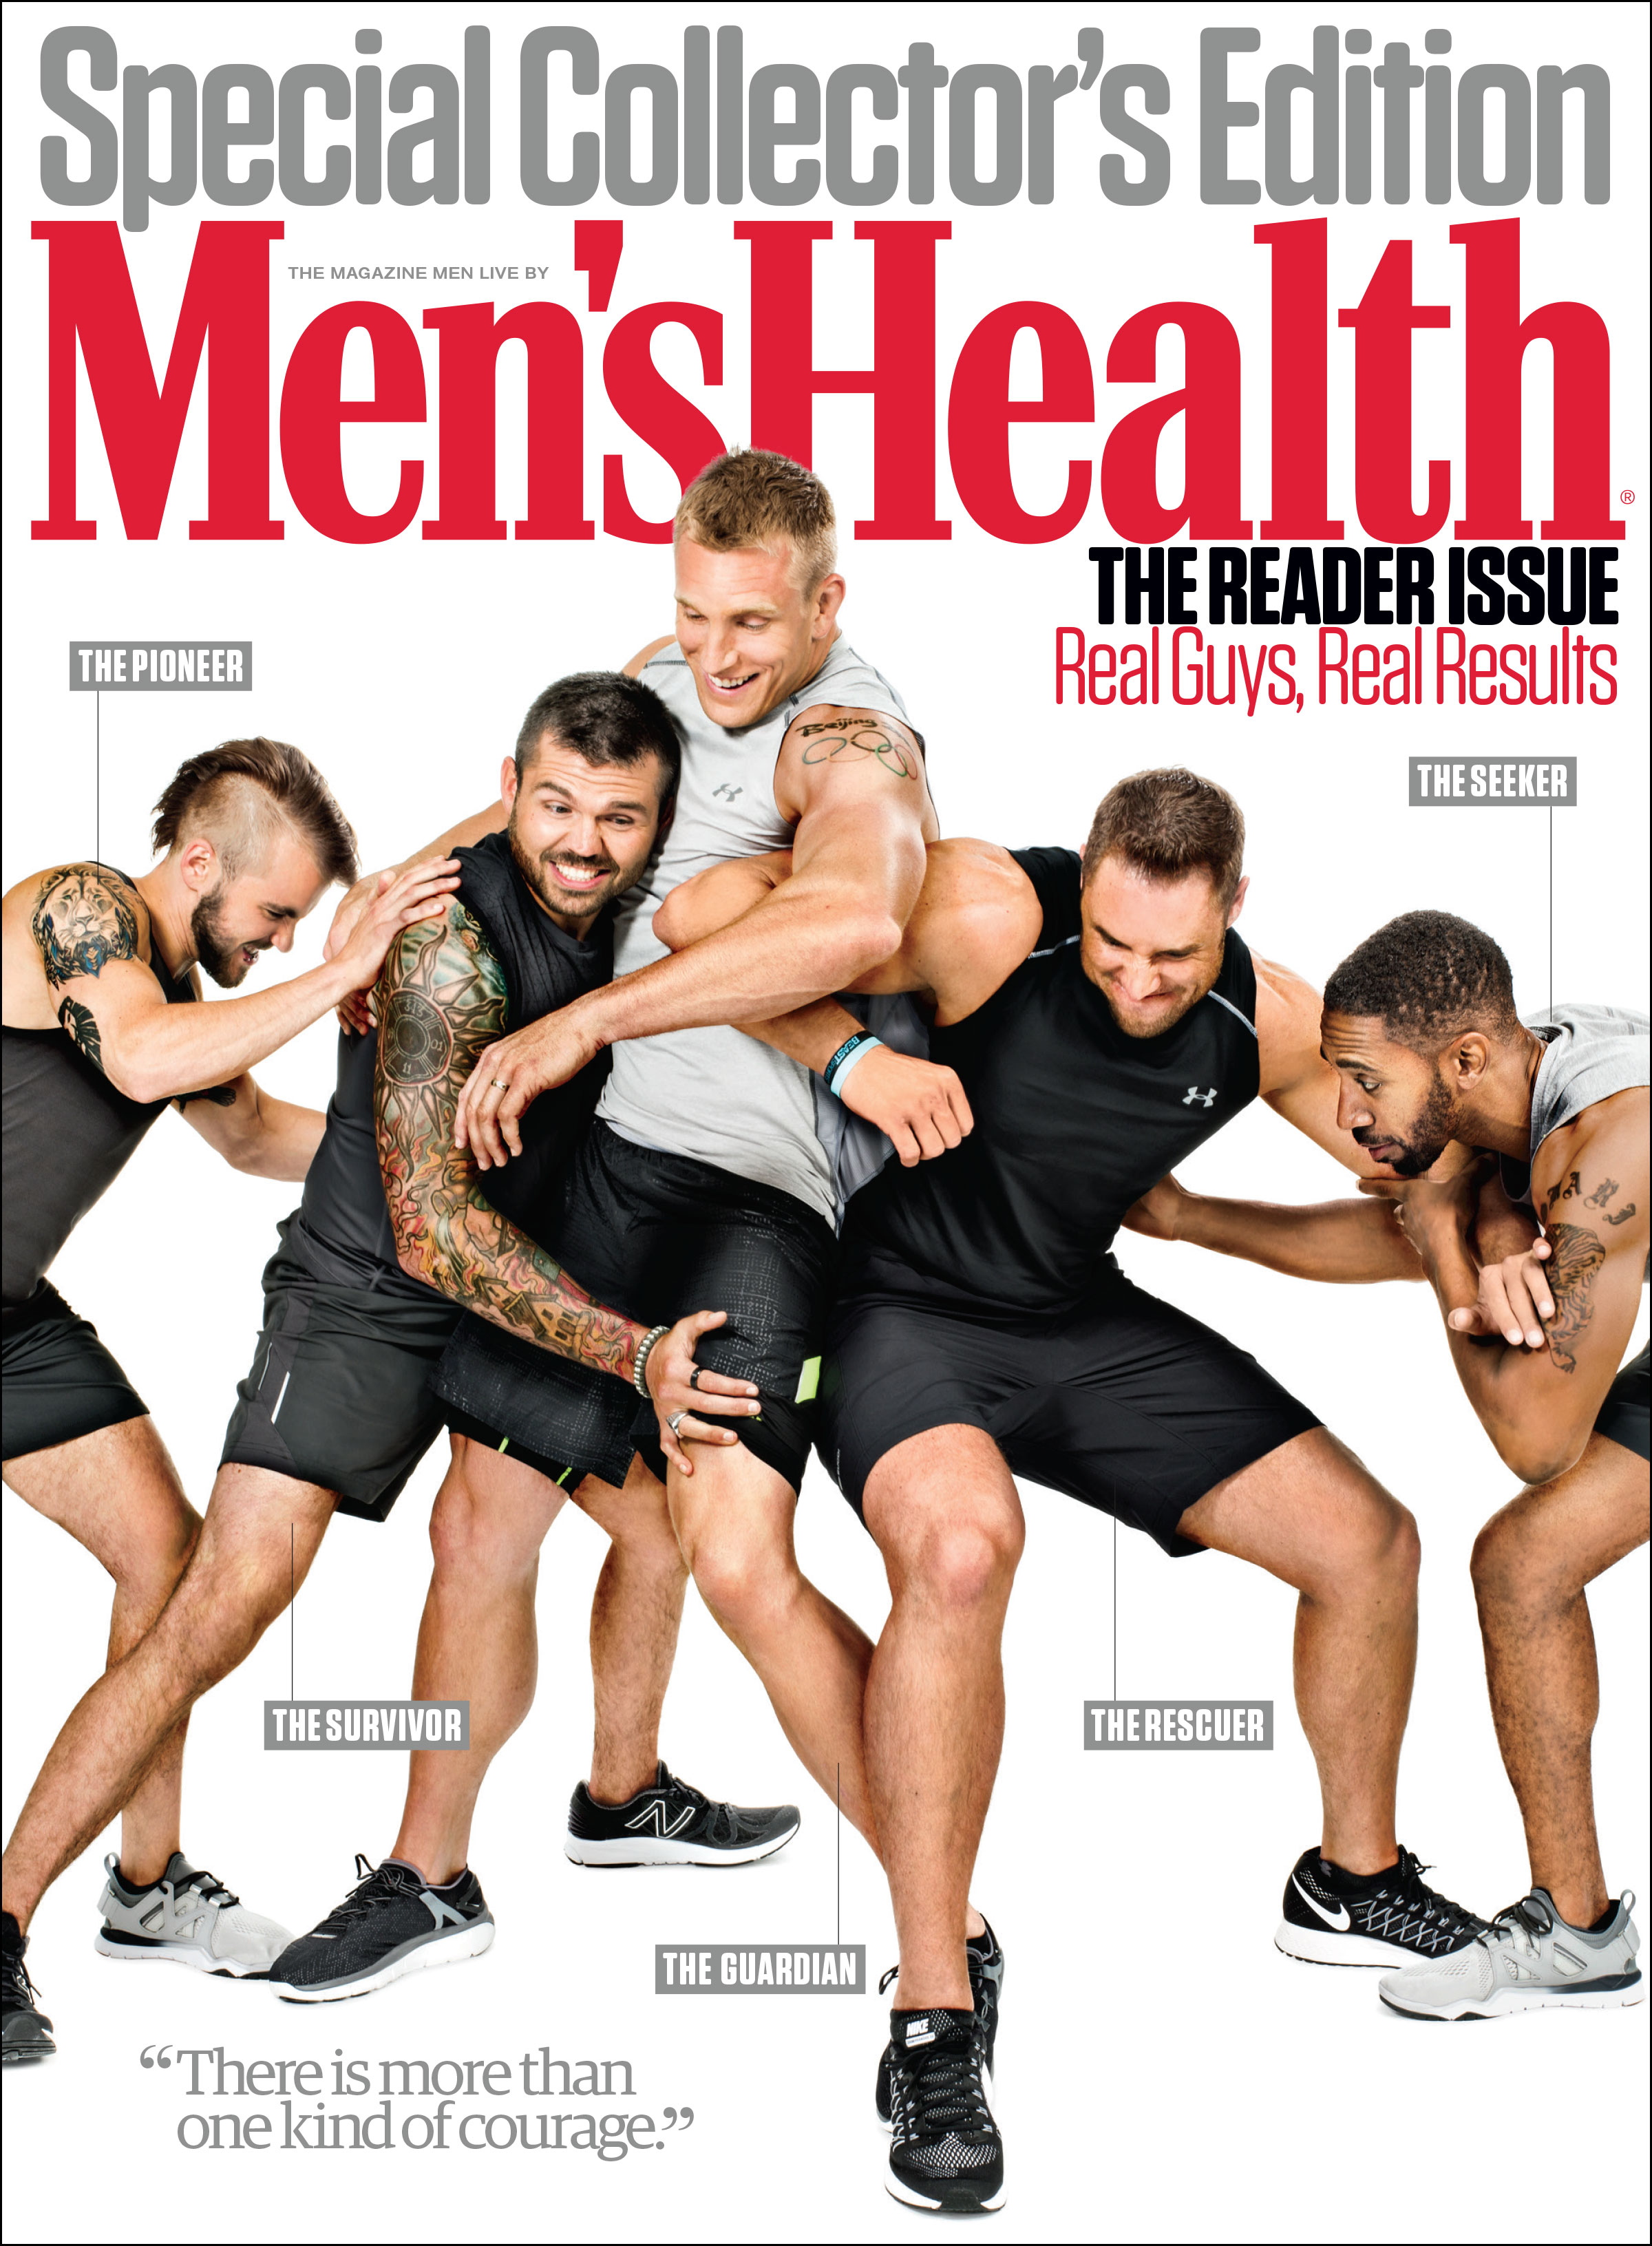 Men's Health-"The Reader Issue," November